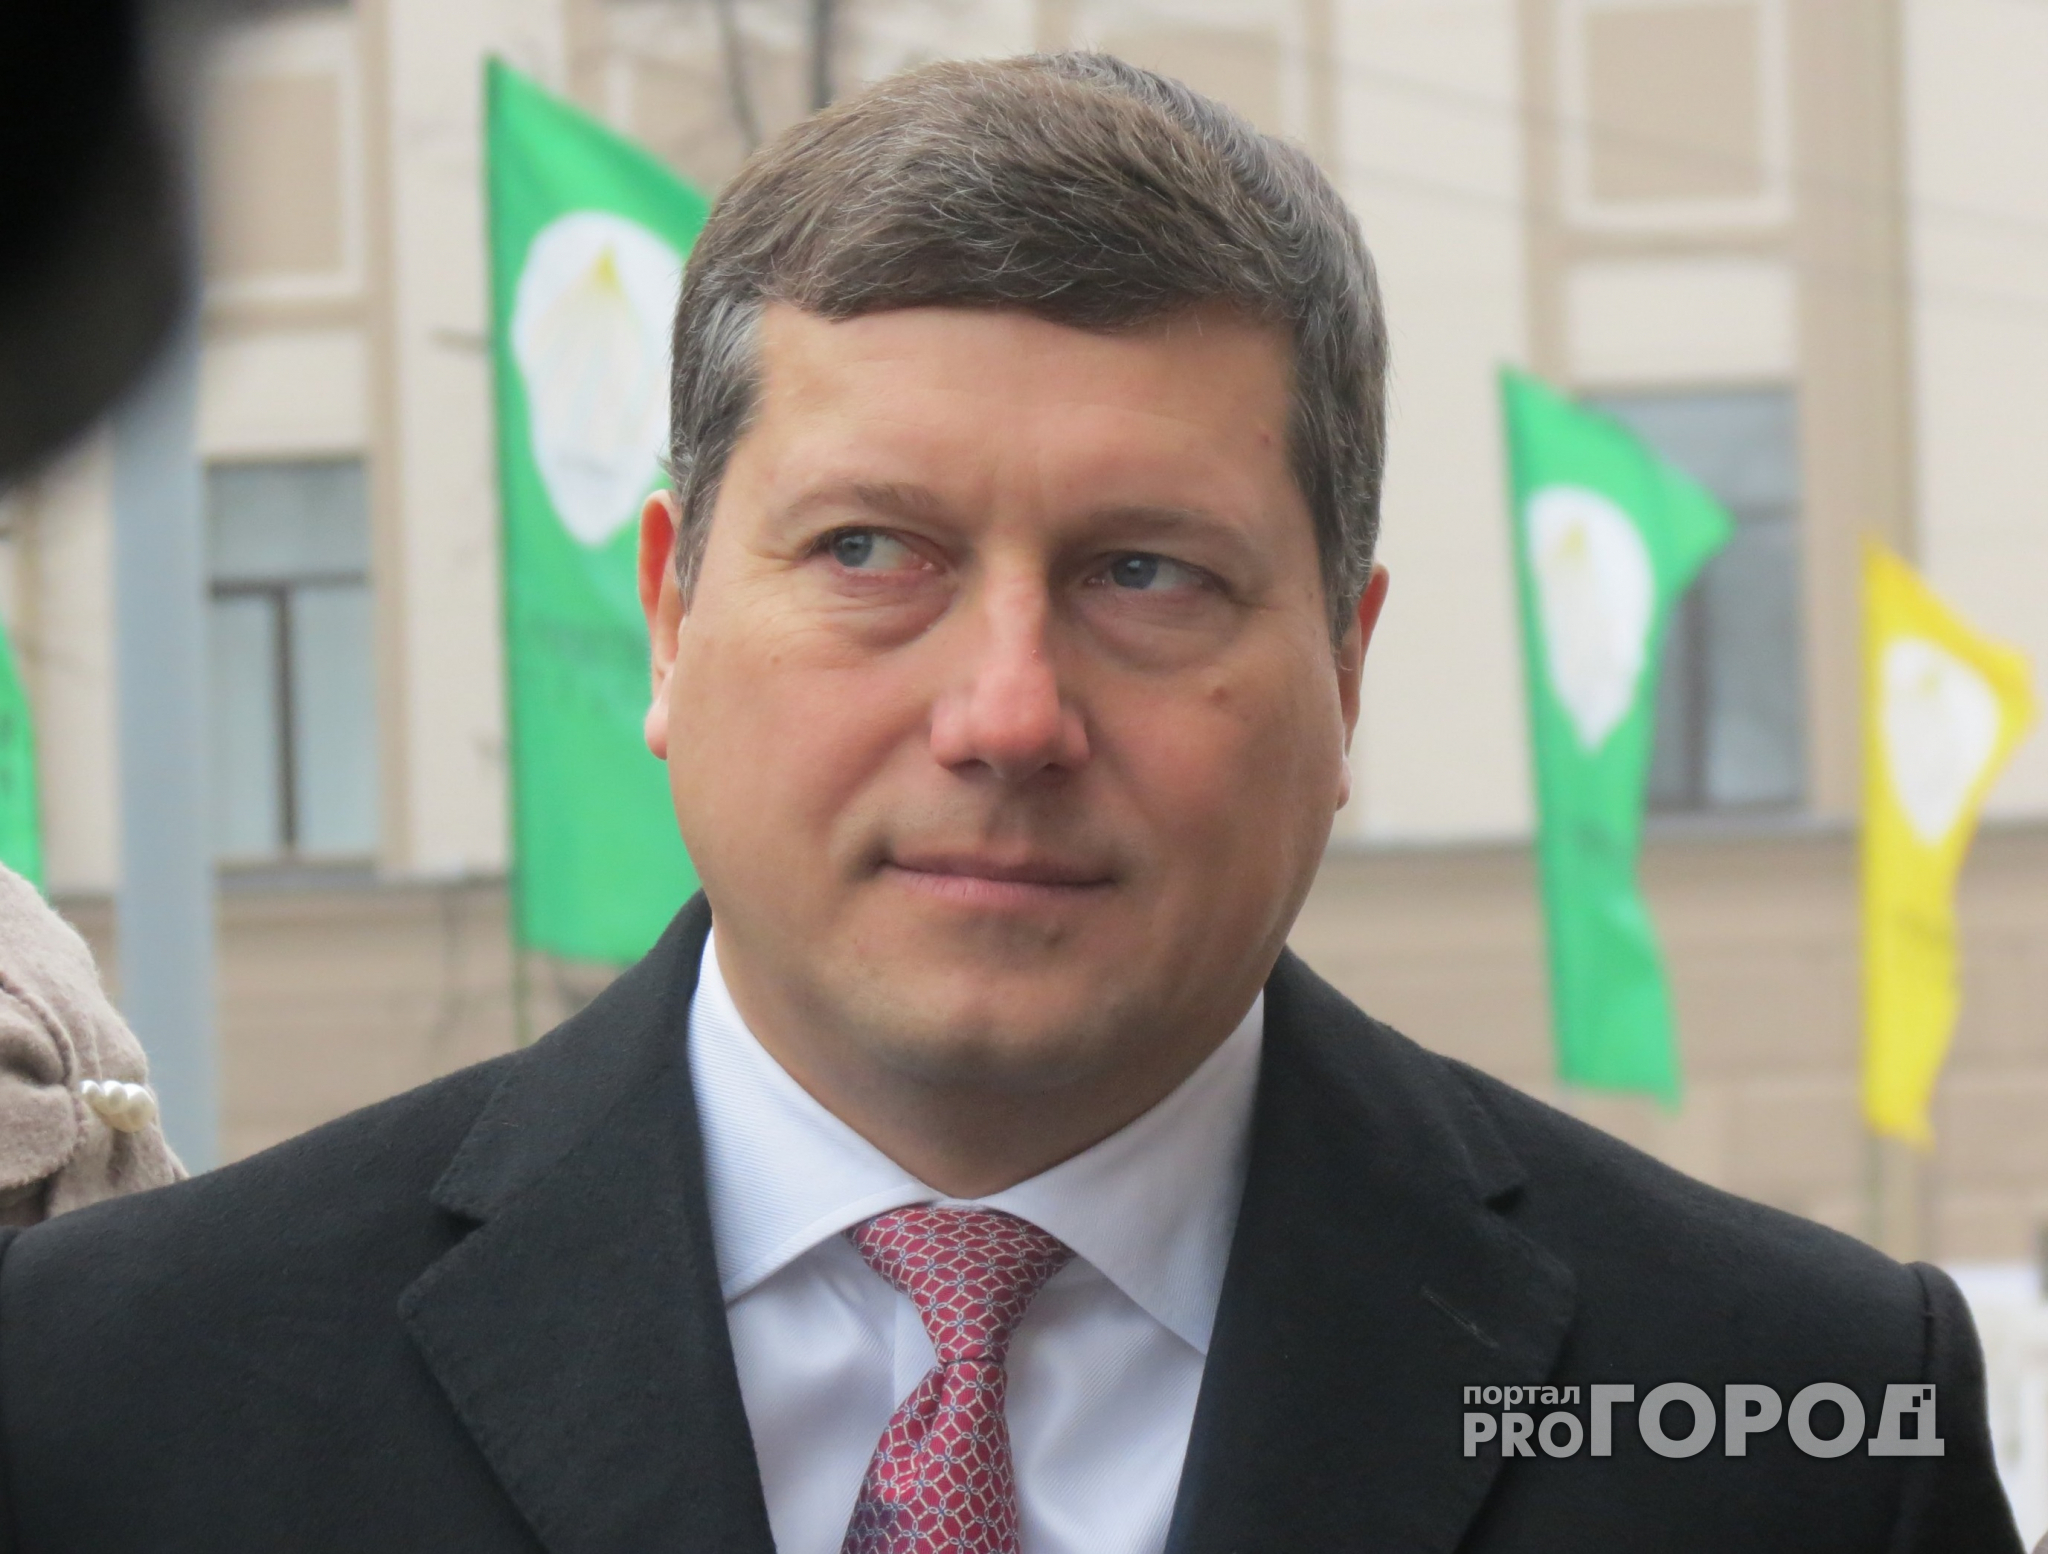 Следователь просит оставить экс-мэра Нижнего Новгорода Олега Сорокина под стражей